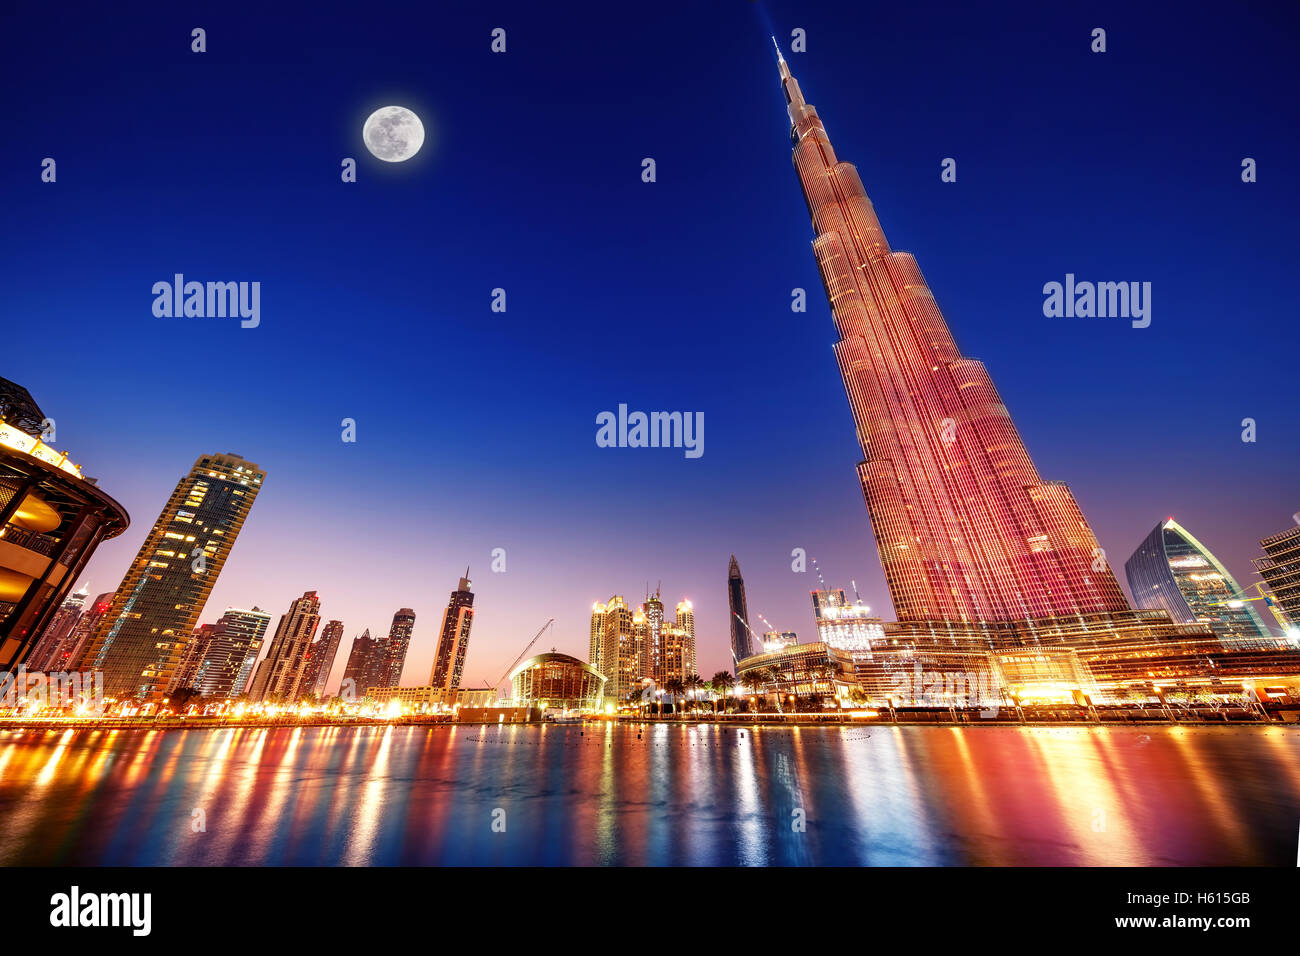 Dubaï, Émirats arabes unis - 17 février : Burj Khalifa et la fontaine - plus haute tour du monde à 828m dans la nuit avec la lumière de la lune Banque D'Images